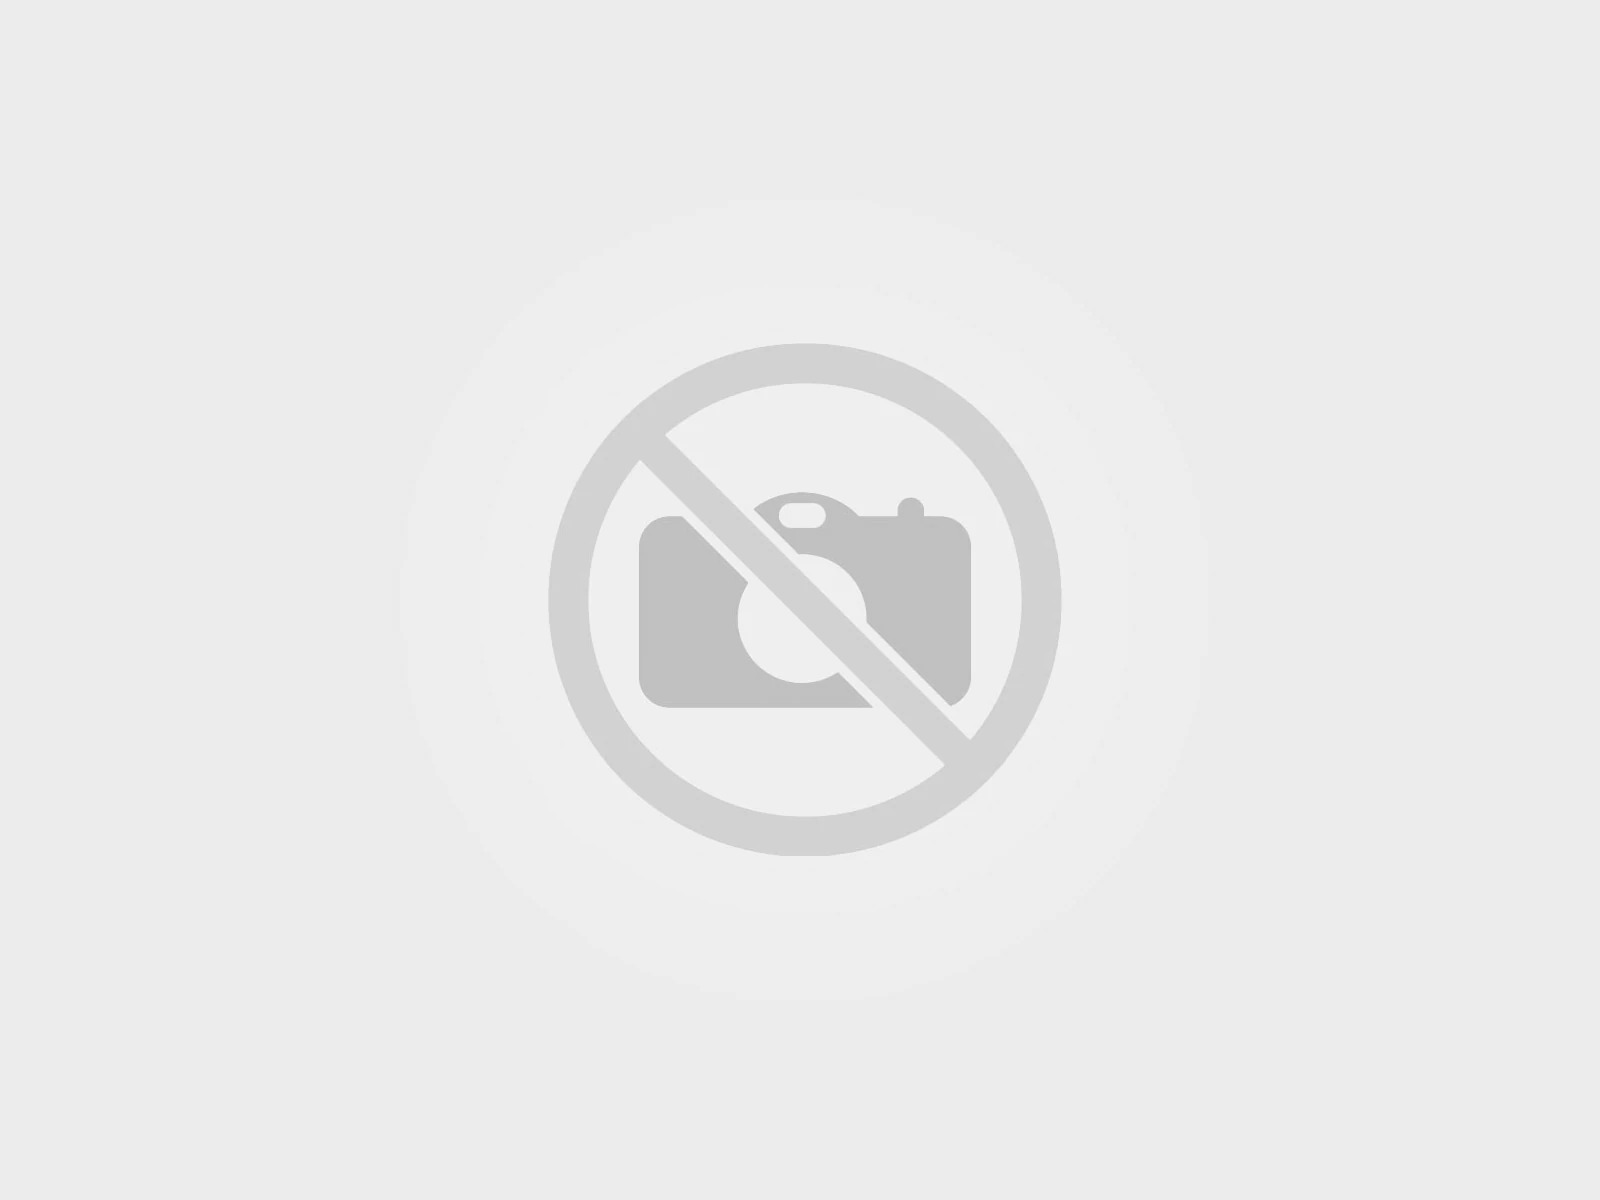 Yves Saint Laurent RU — промокоды, купоны, скидки, акции на сегдоня / месяц